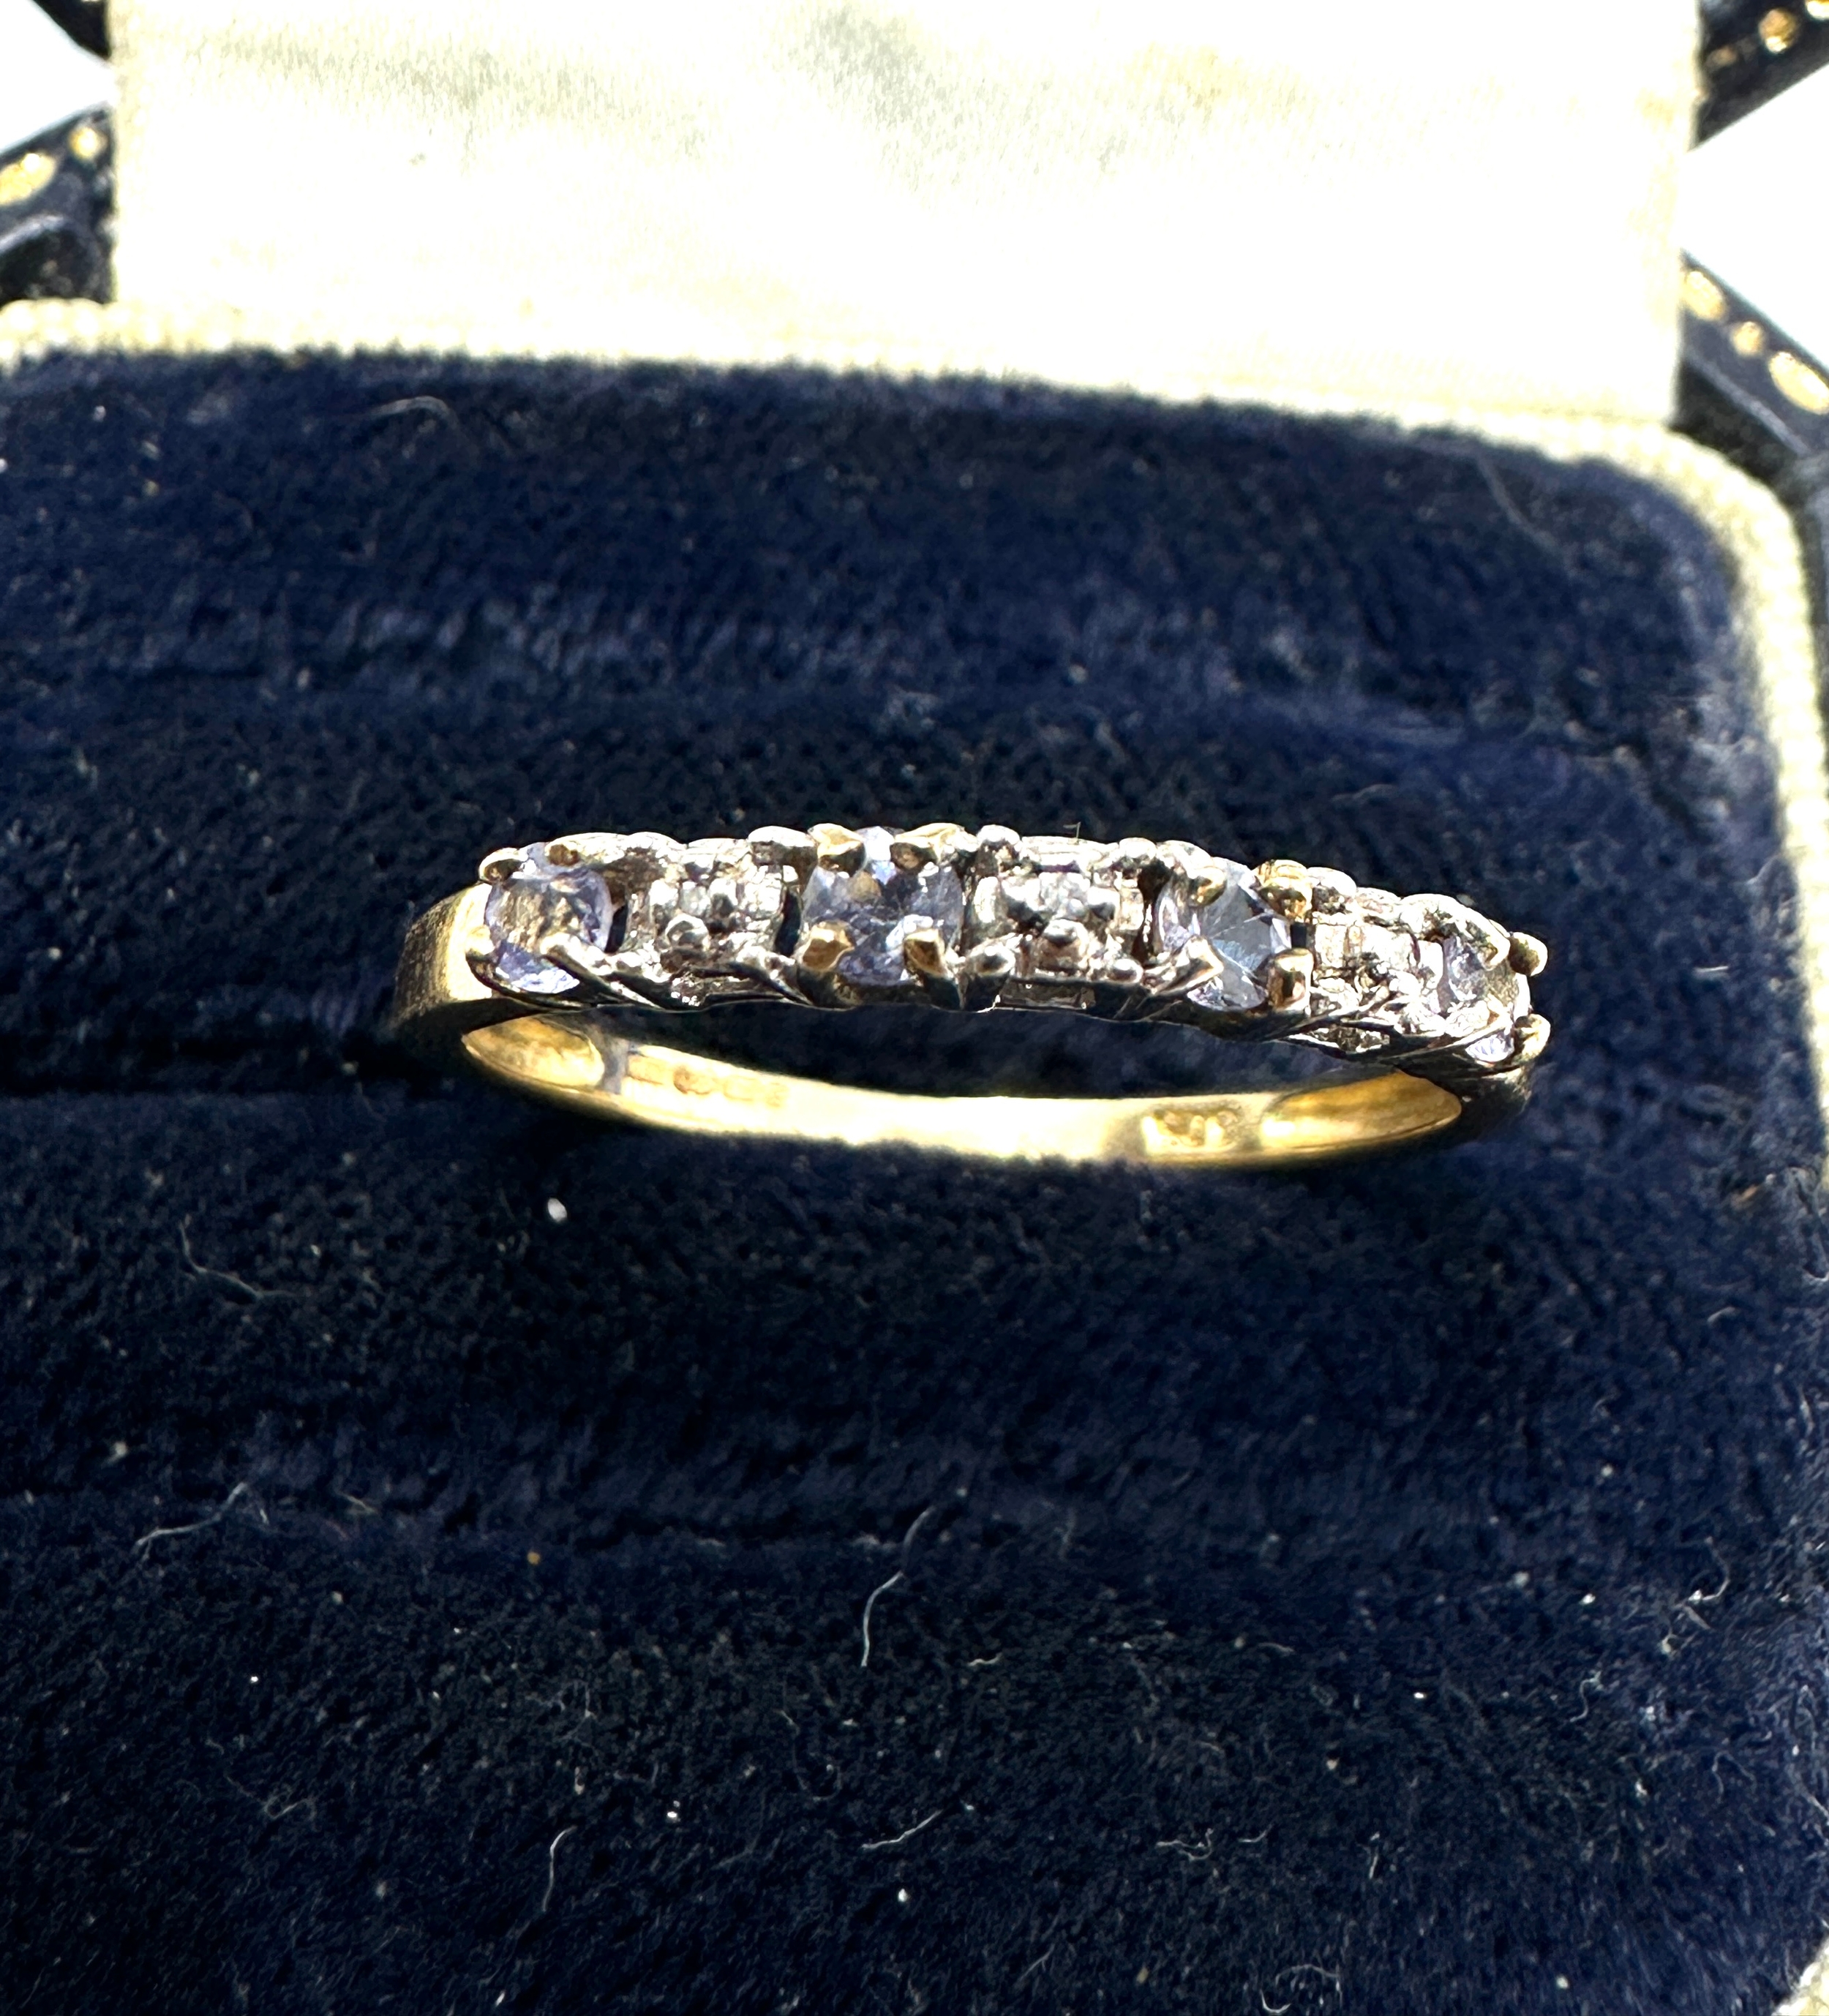 9ct gold tanzanite & diamond ring weight 1.5g